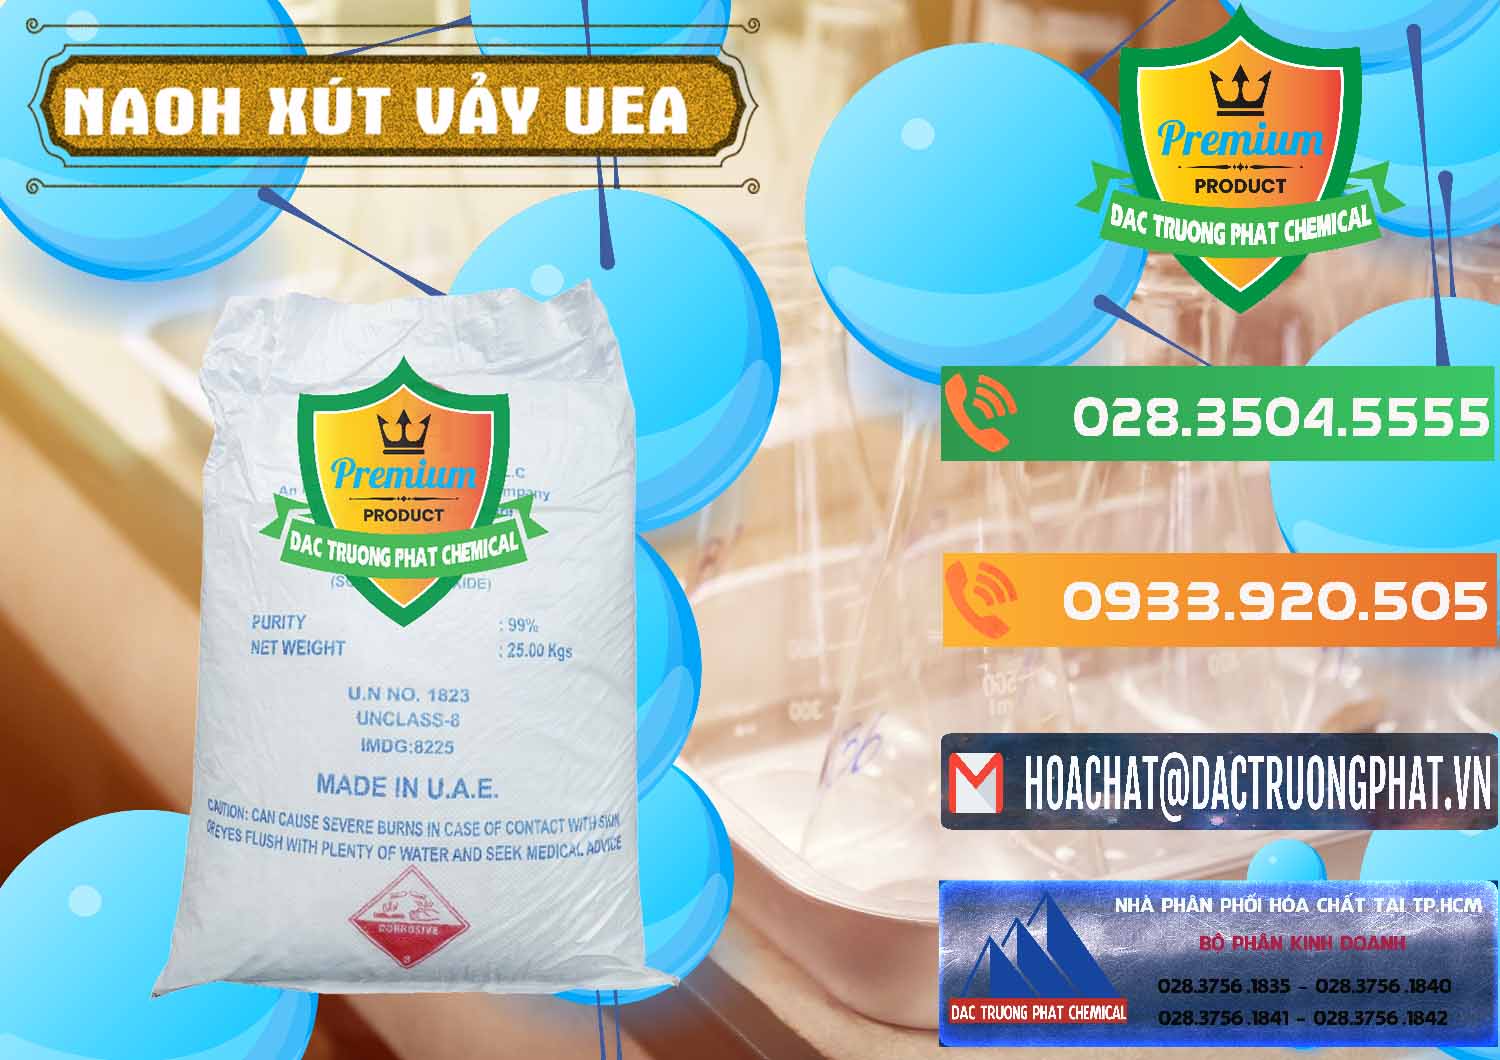 Nơi chuyên bán ( cung cấp ) Xút Vảy - NaOH Vảy UAE Iran - 0432 - Đơn vị chuyên nhập khẩu ( phân phối ) hóa chất tại TP.HCM - hoachatxulynuoc.com.vn